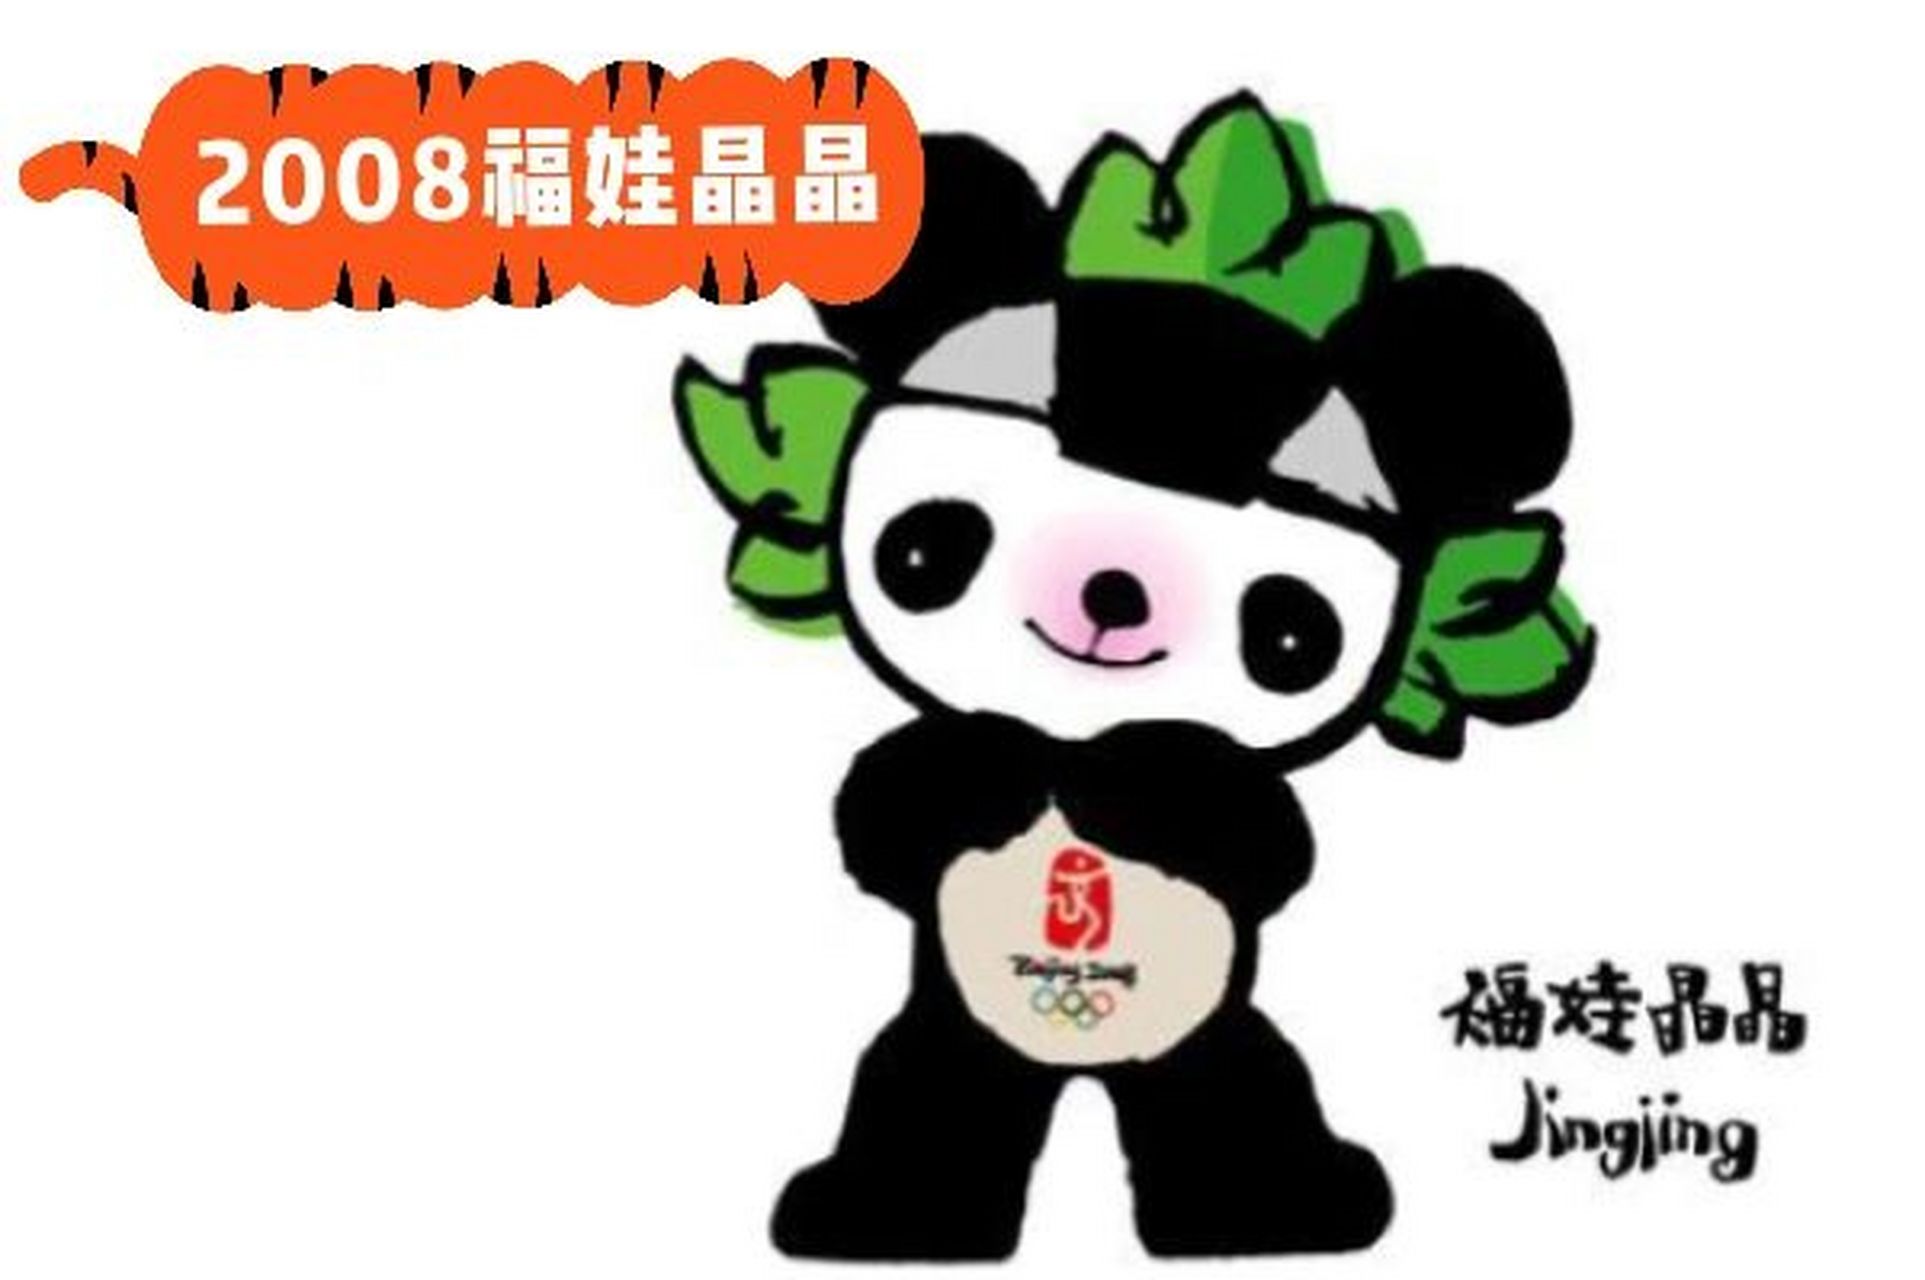 吉祥物熊猫进化史04 